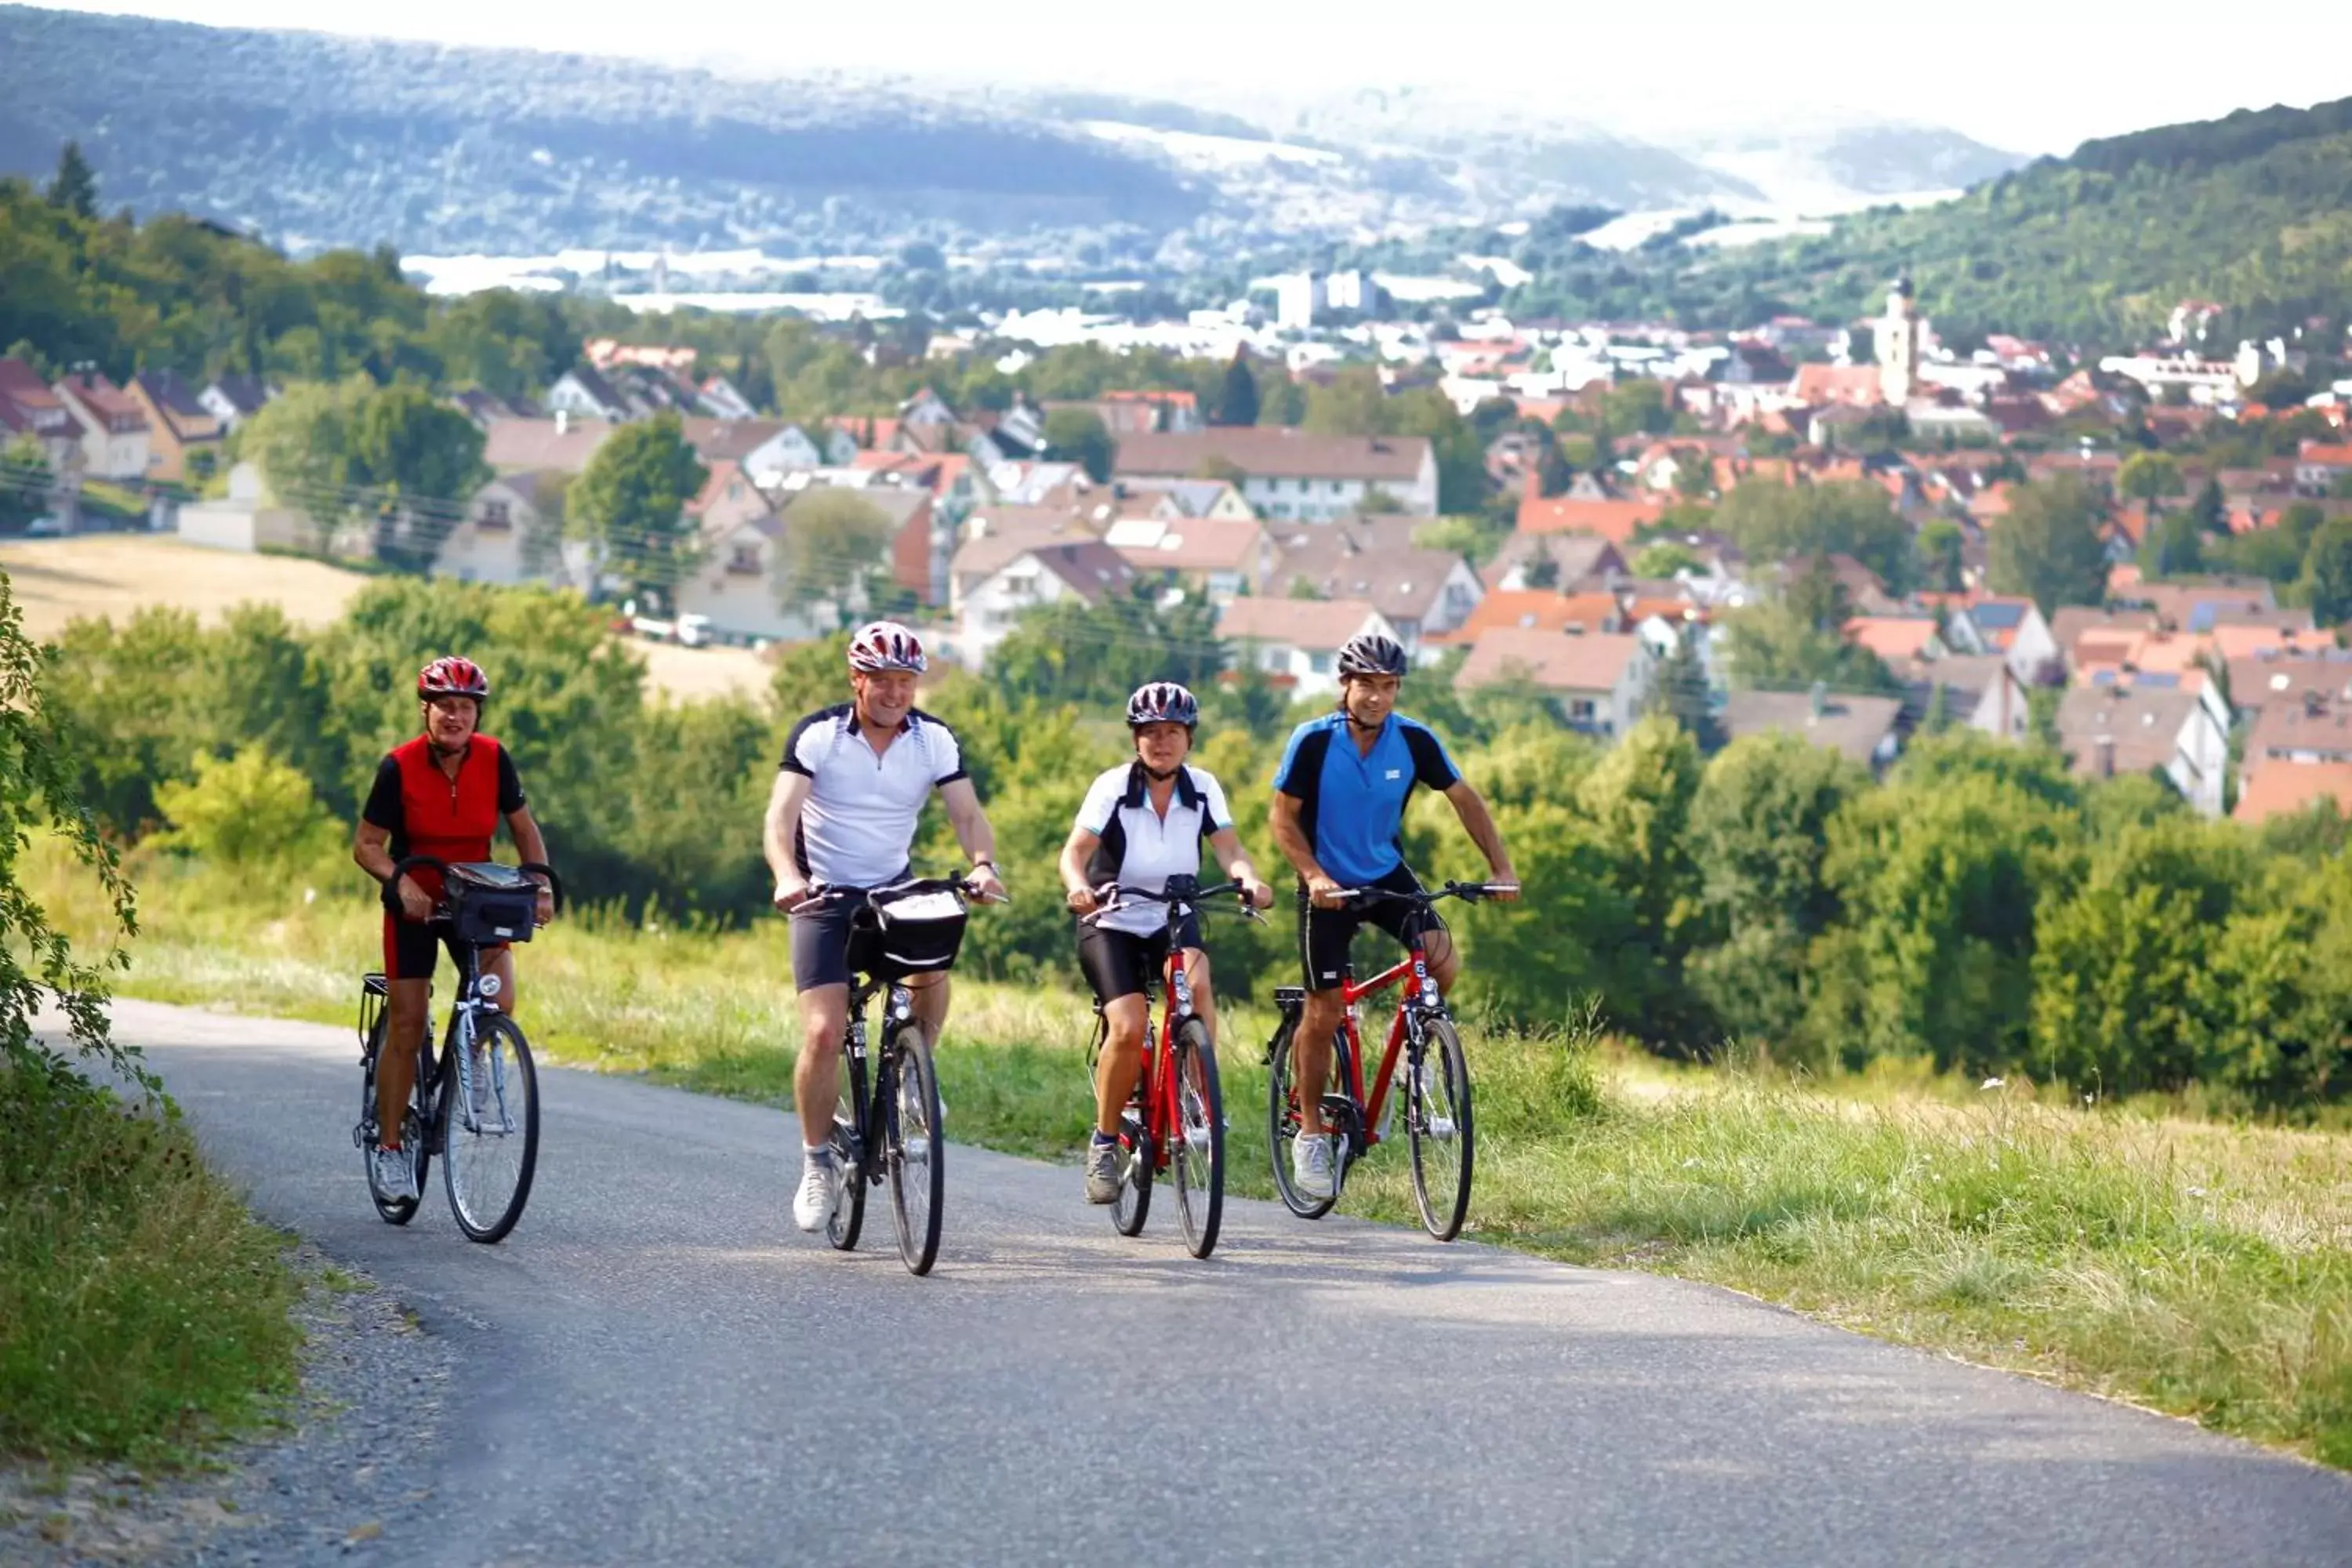 Other, Biking in Best Western Premier Parkhotel Bad Mergentheim